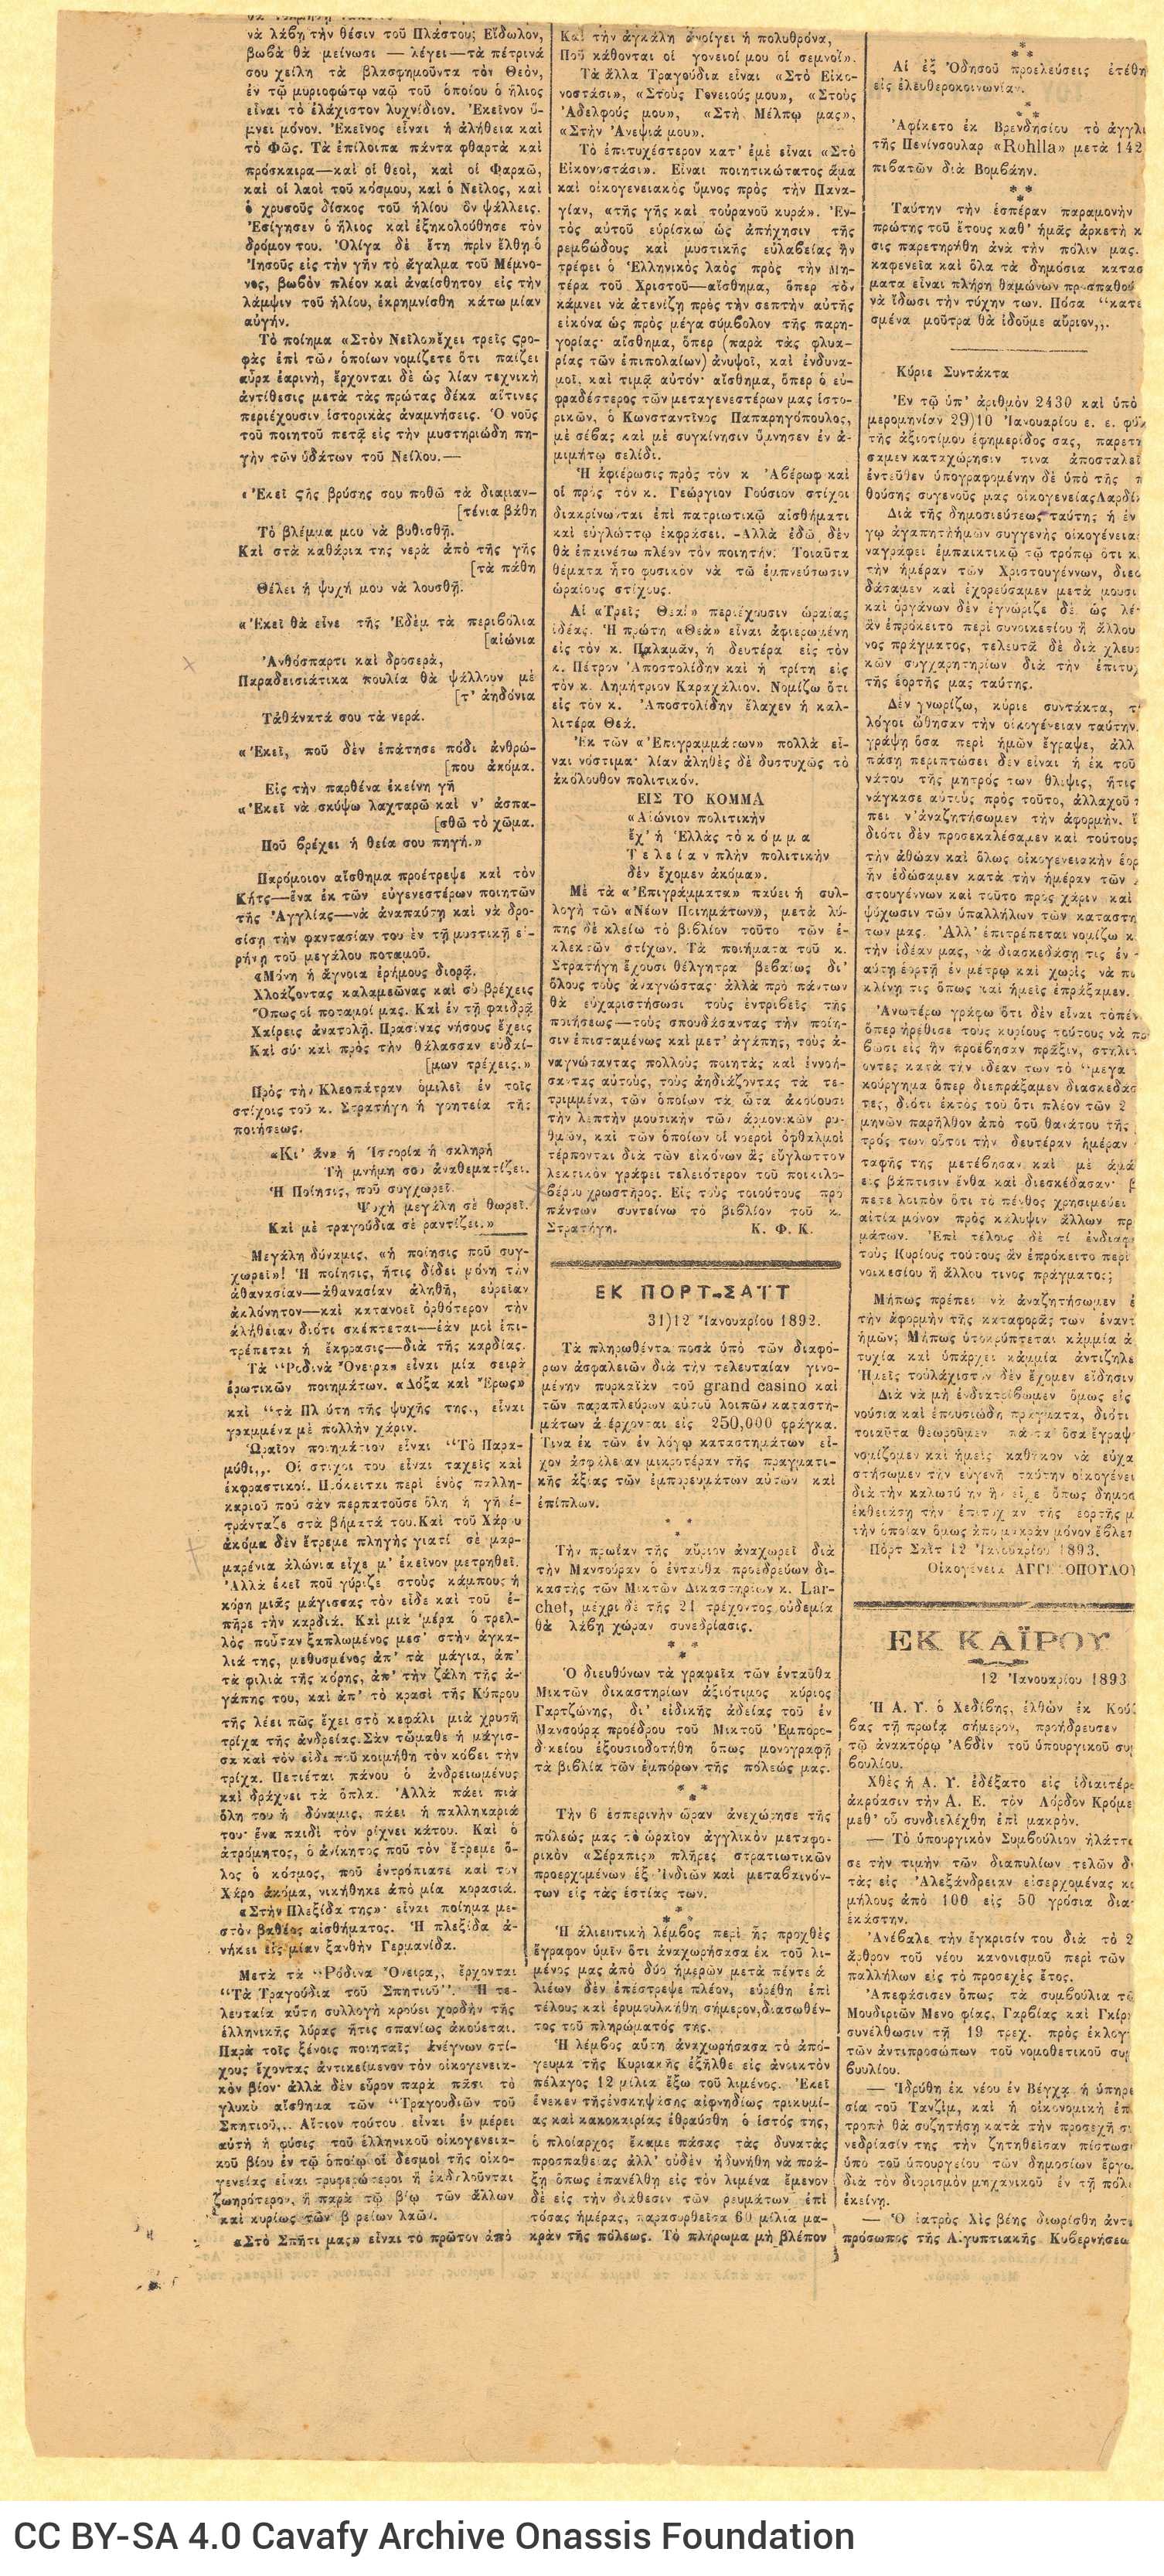 Απόκομμα από την εφημερίδα *Τηλέγραφος* της 2/14 Ιανουαρίου 1893, με άρθρ